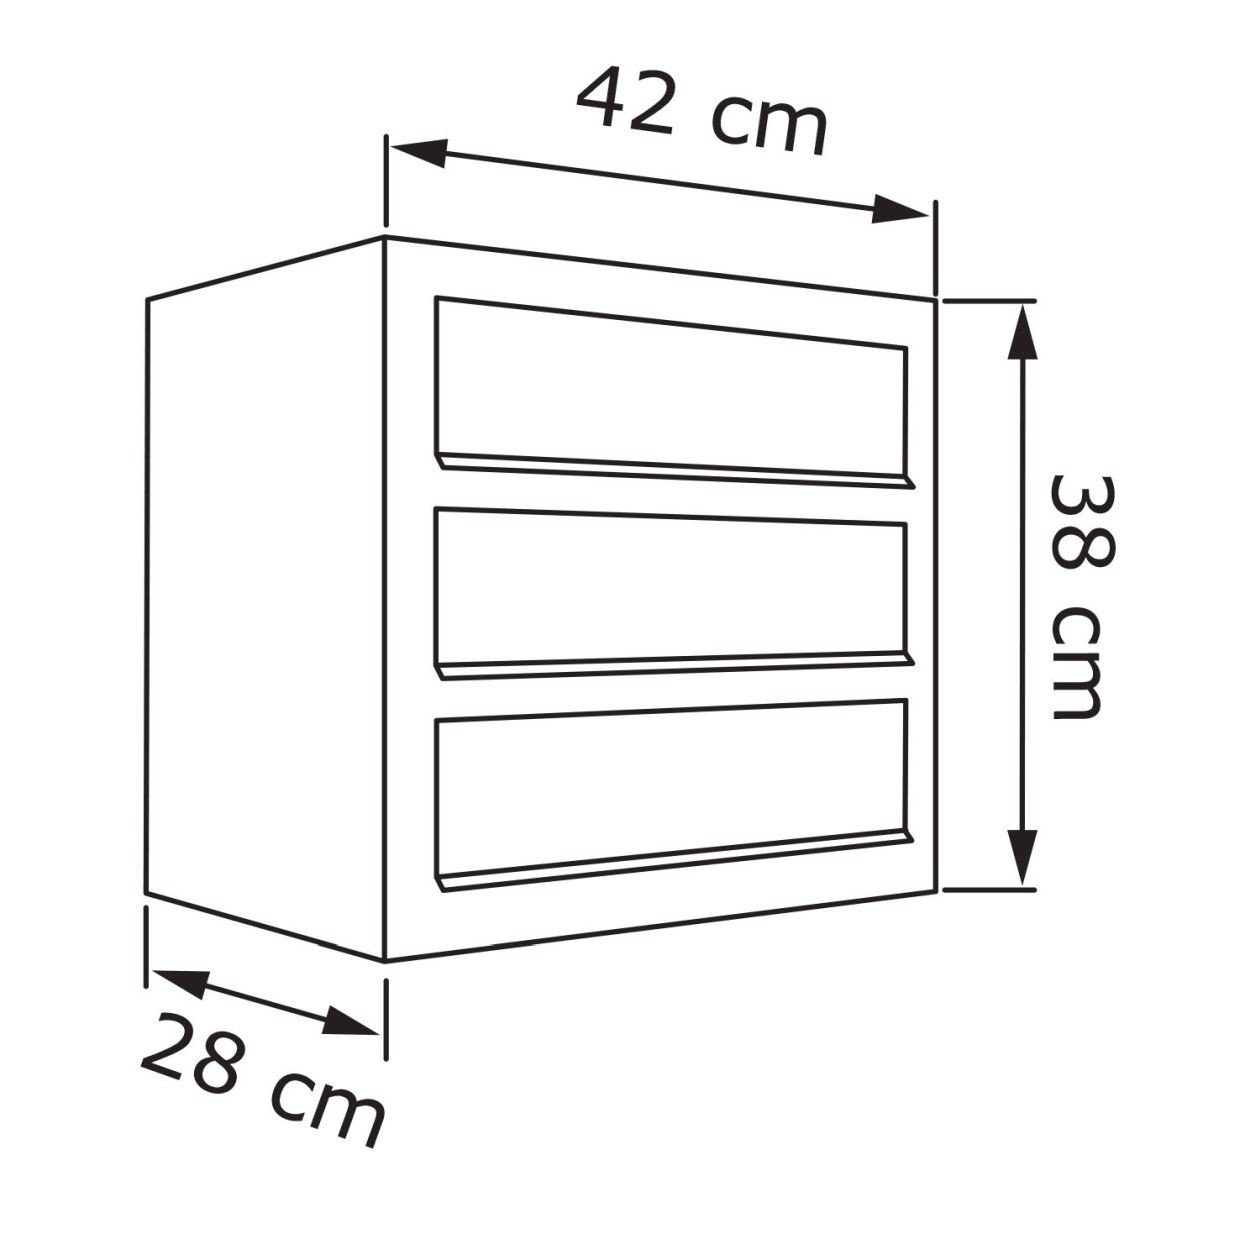 Briefkastenanlage Briefkasten for Metallic Cube Grau Three Bravios